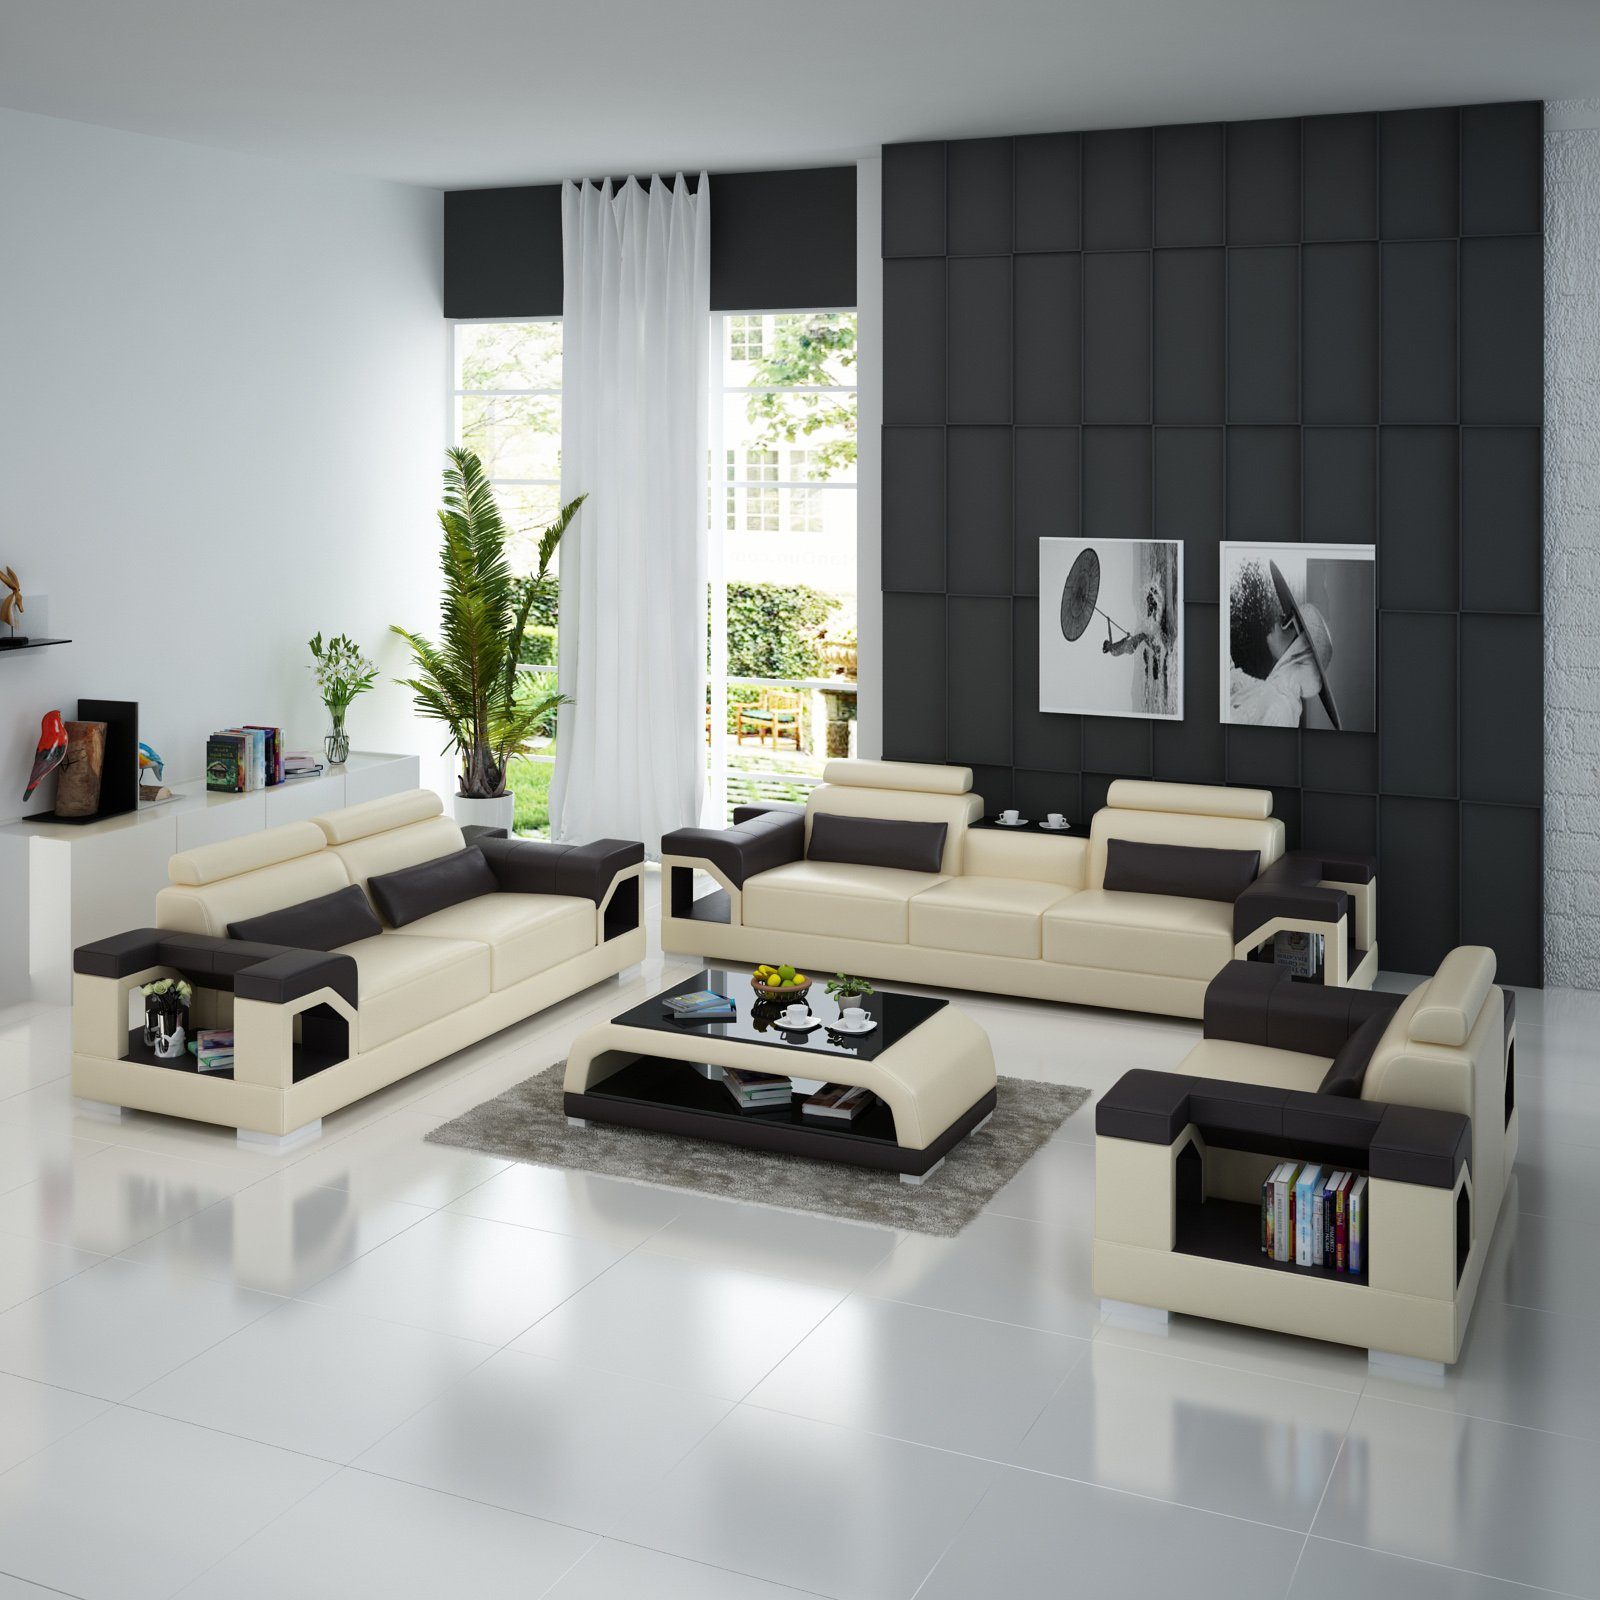 Modern JVmoebel Sofagarnitur Ledersofa Design Wohnzimmer-Set, Garnitur usb 321 Couch Sofa Grau/Schwarz